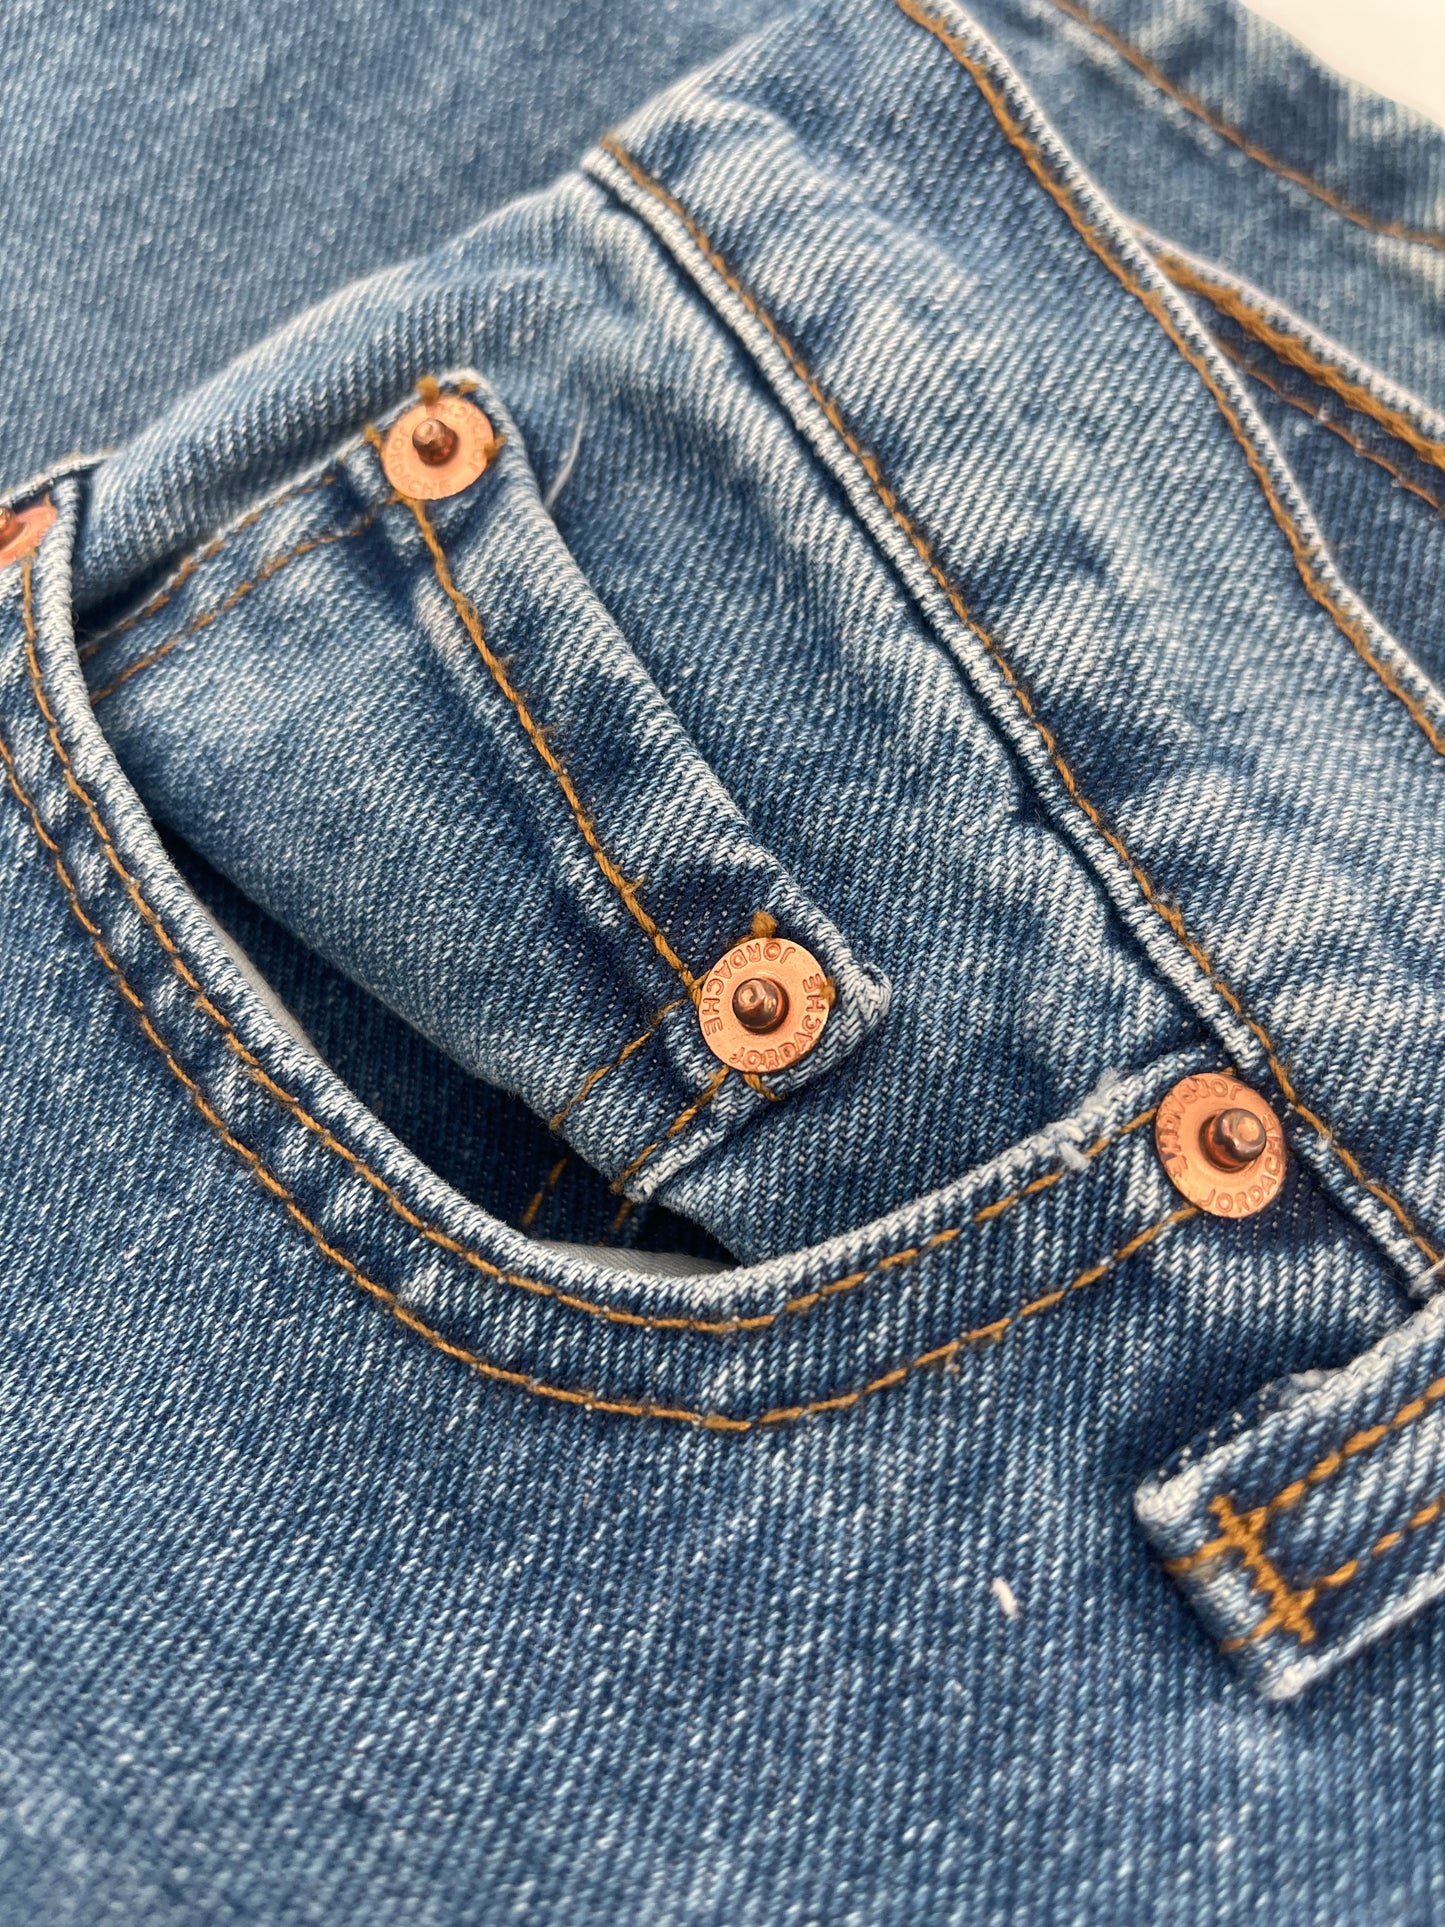 Vintage Jordache Denim Jeans (Size 3/4)